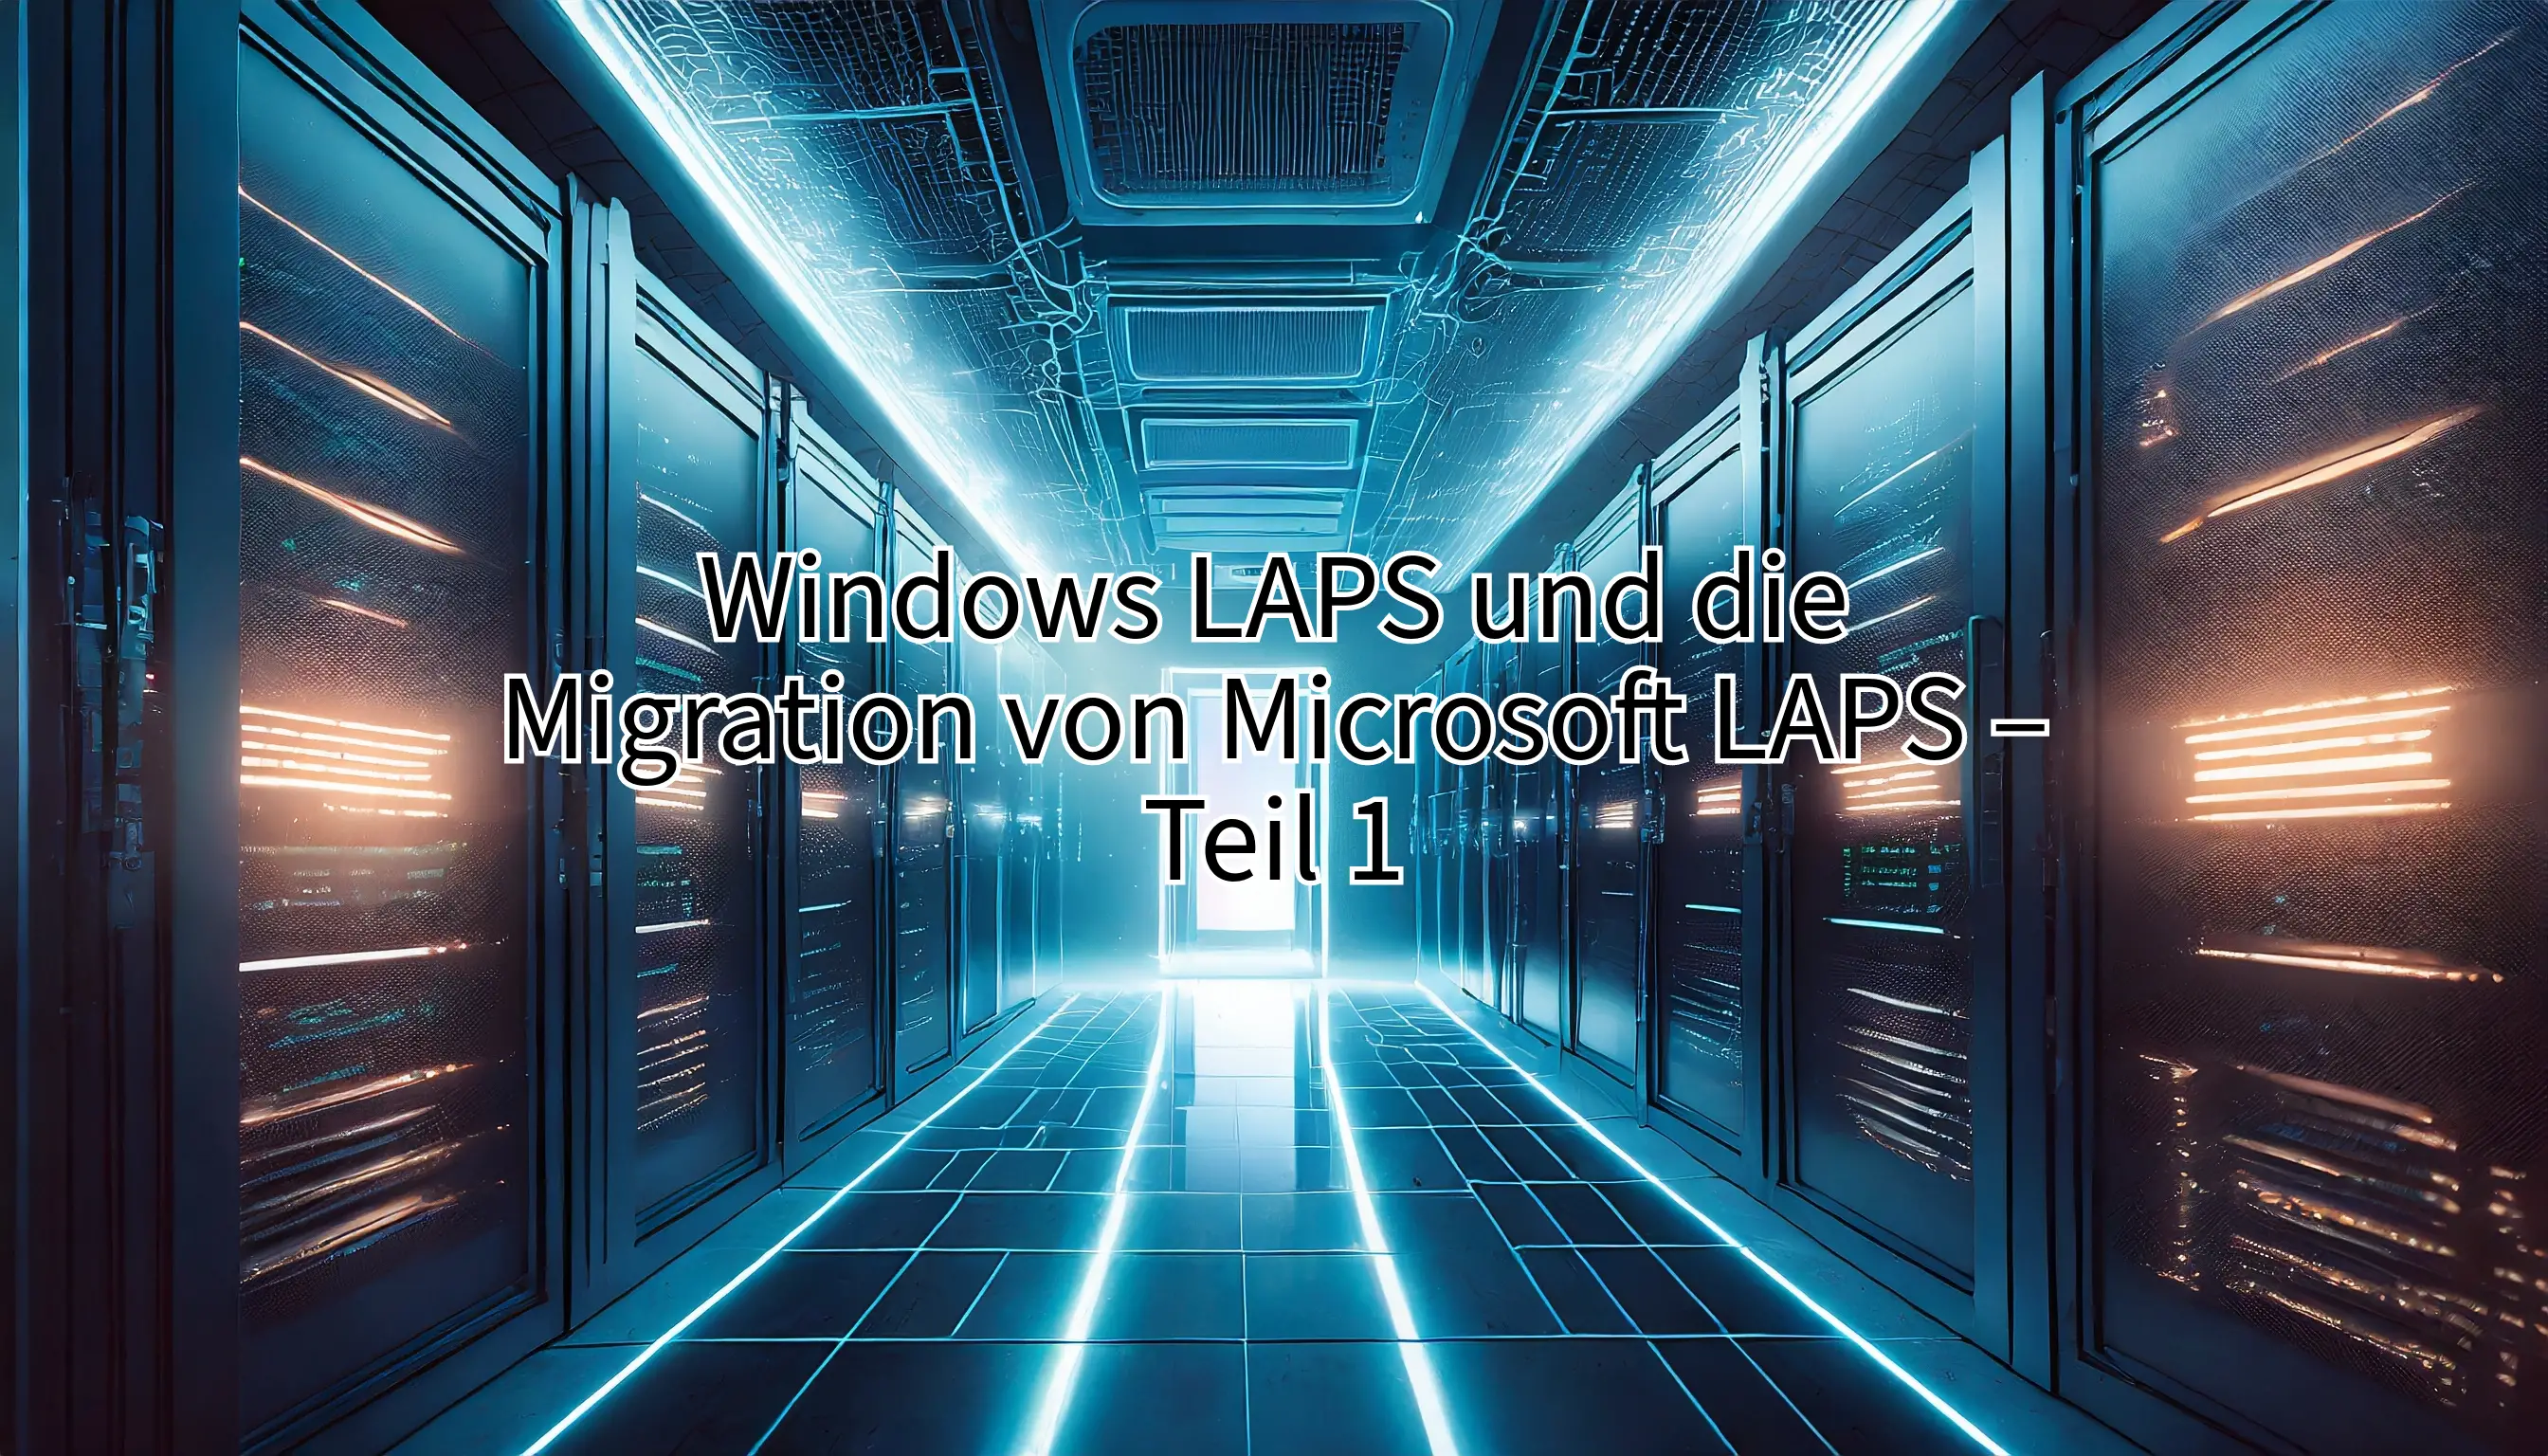 Windows LAPS und die Migration von Microsoft LAPS – Teil 1